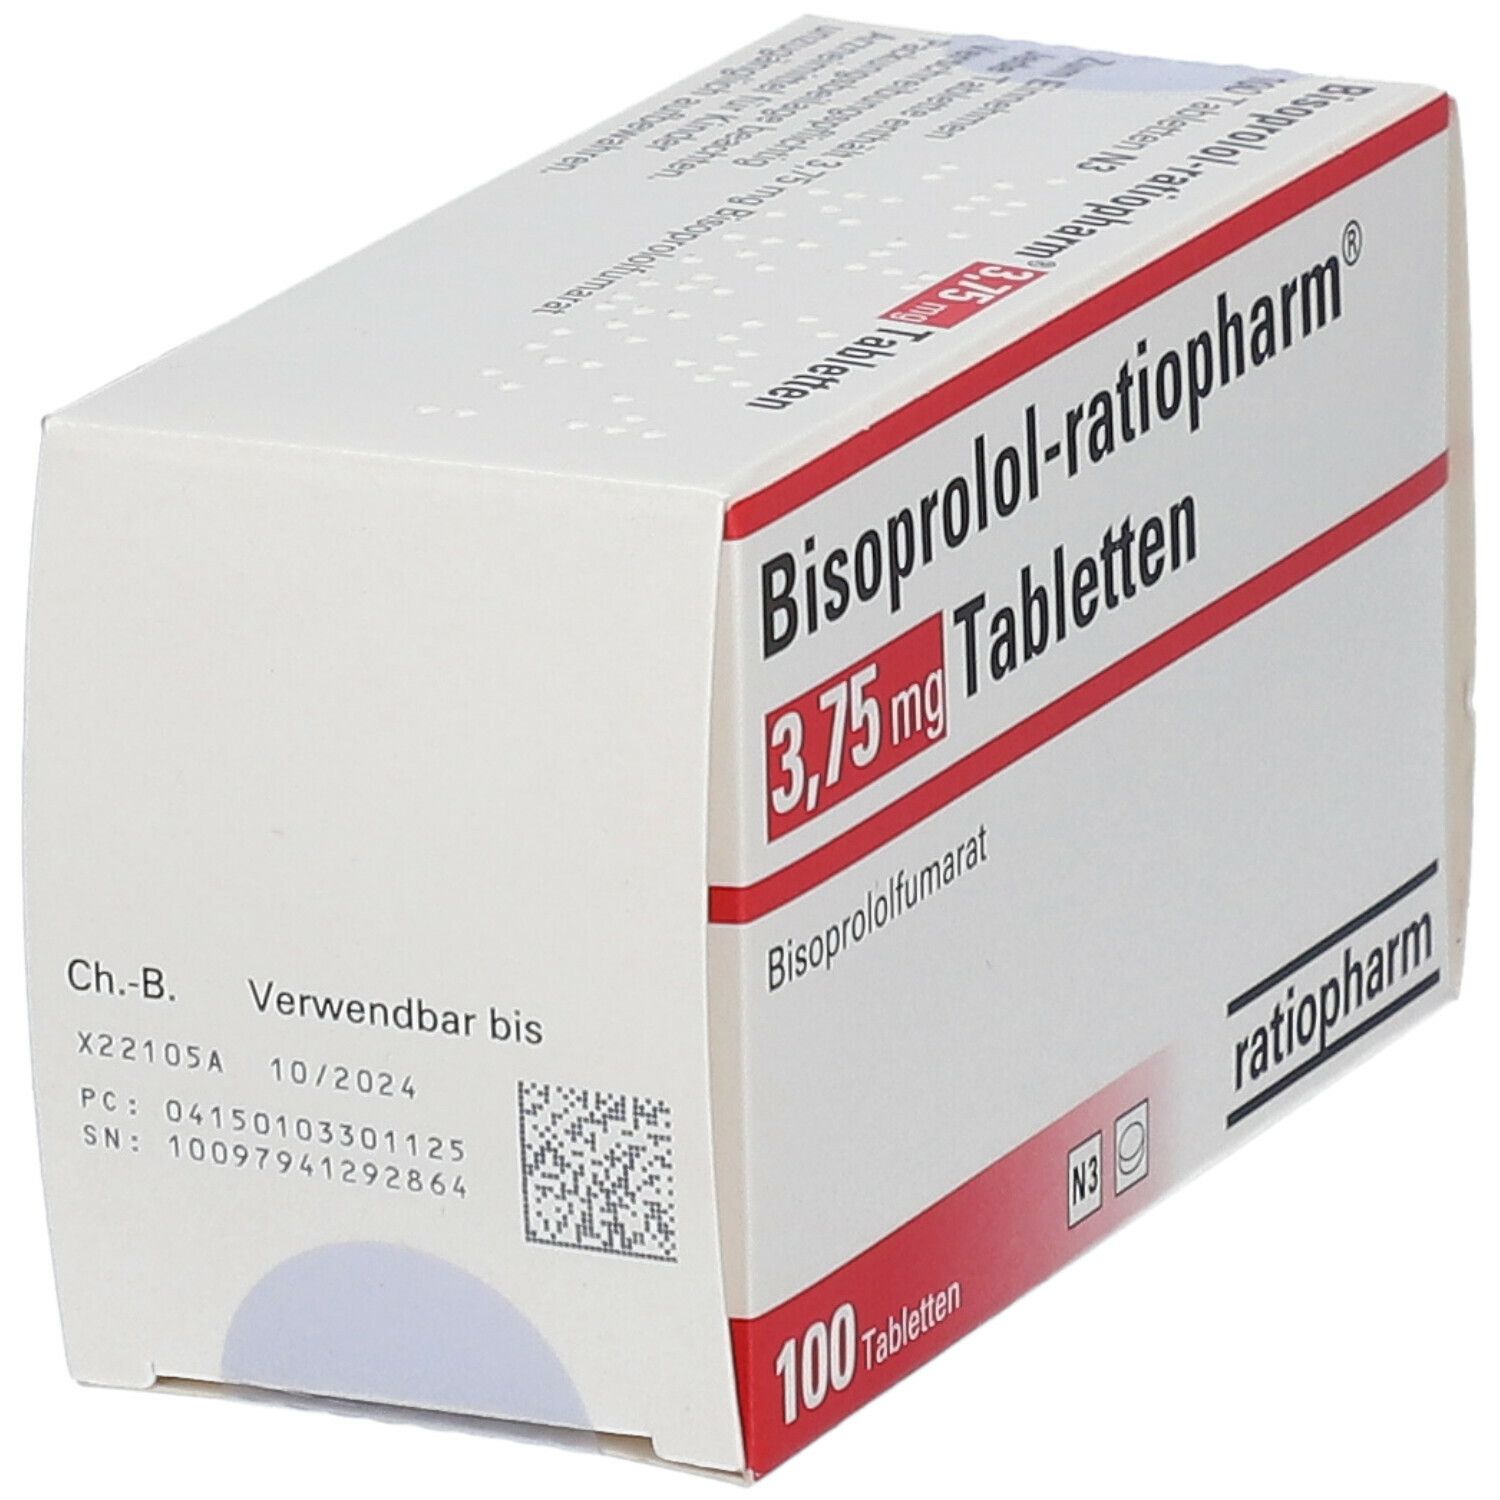 Bisoprolol-ratiopharm® 3,75 mg